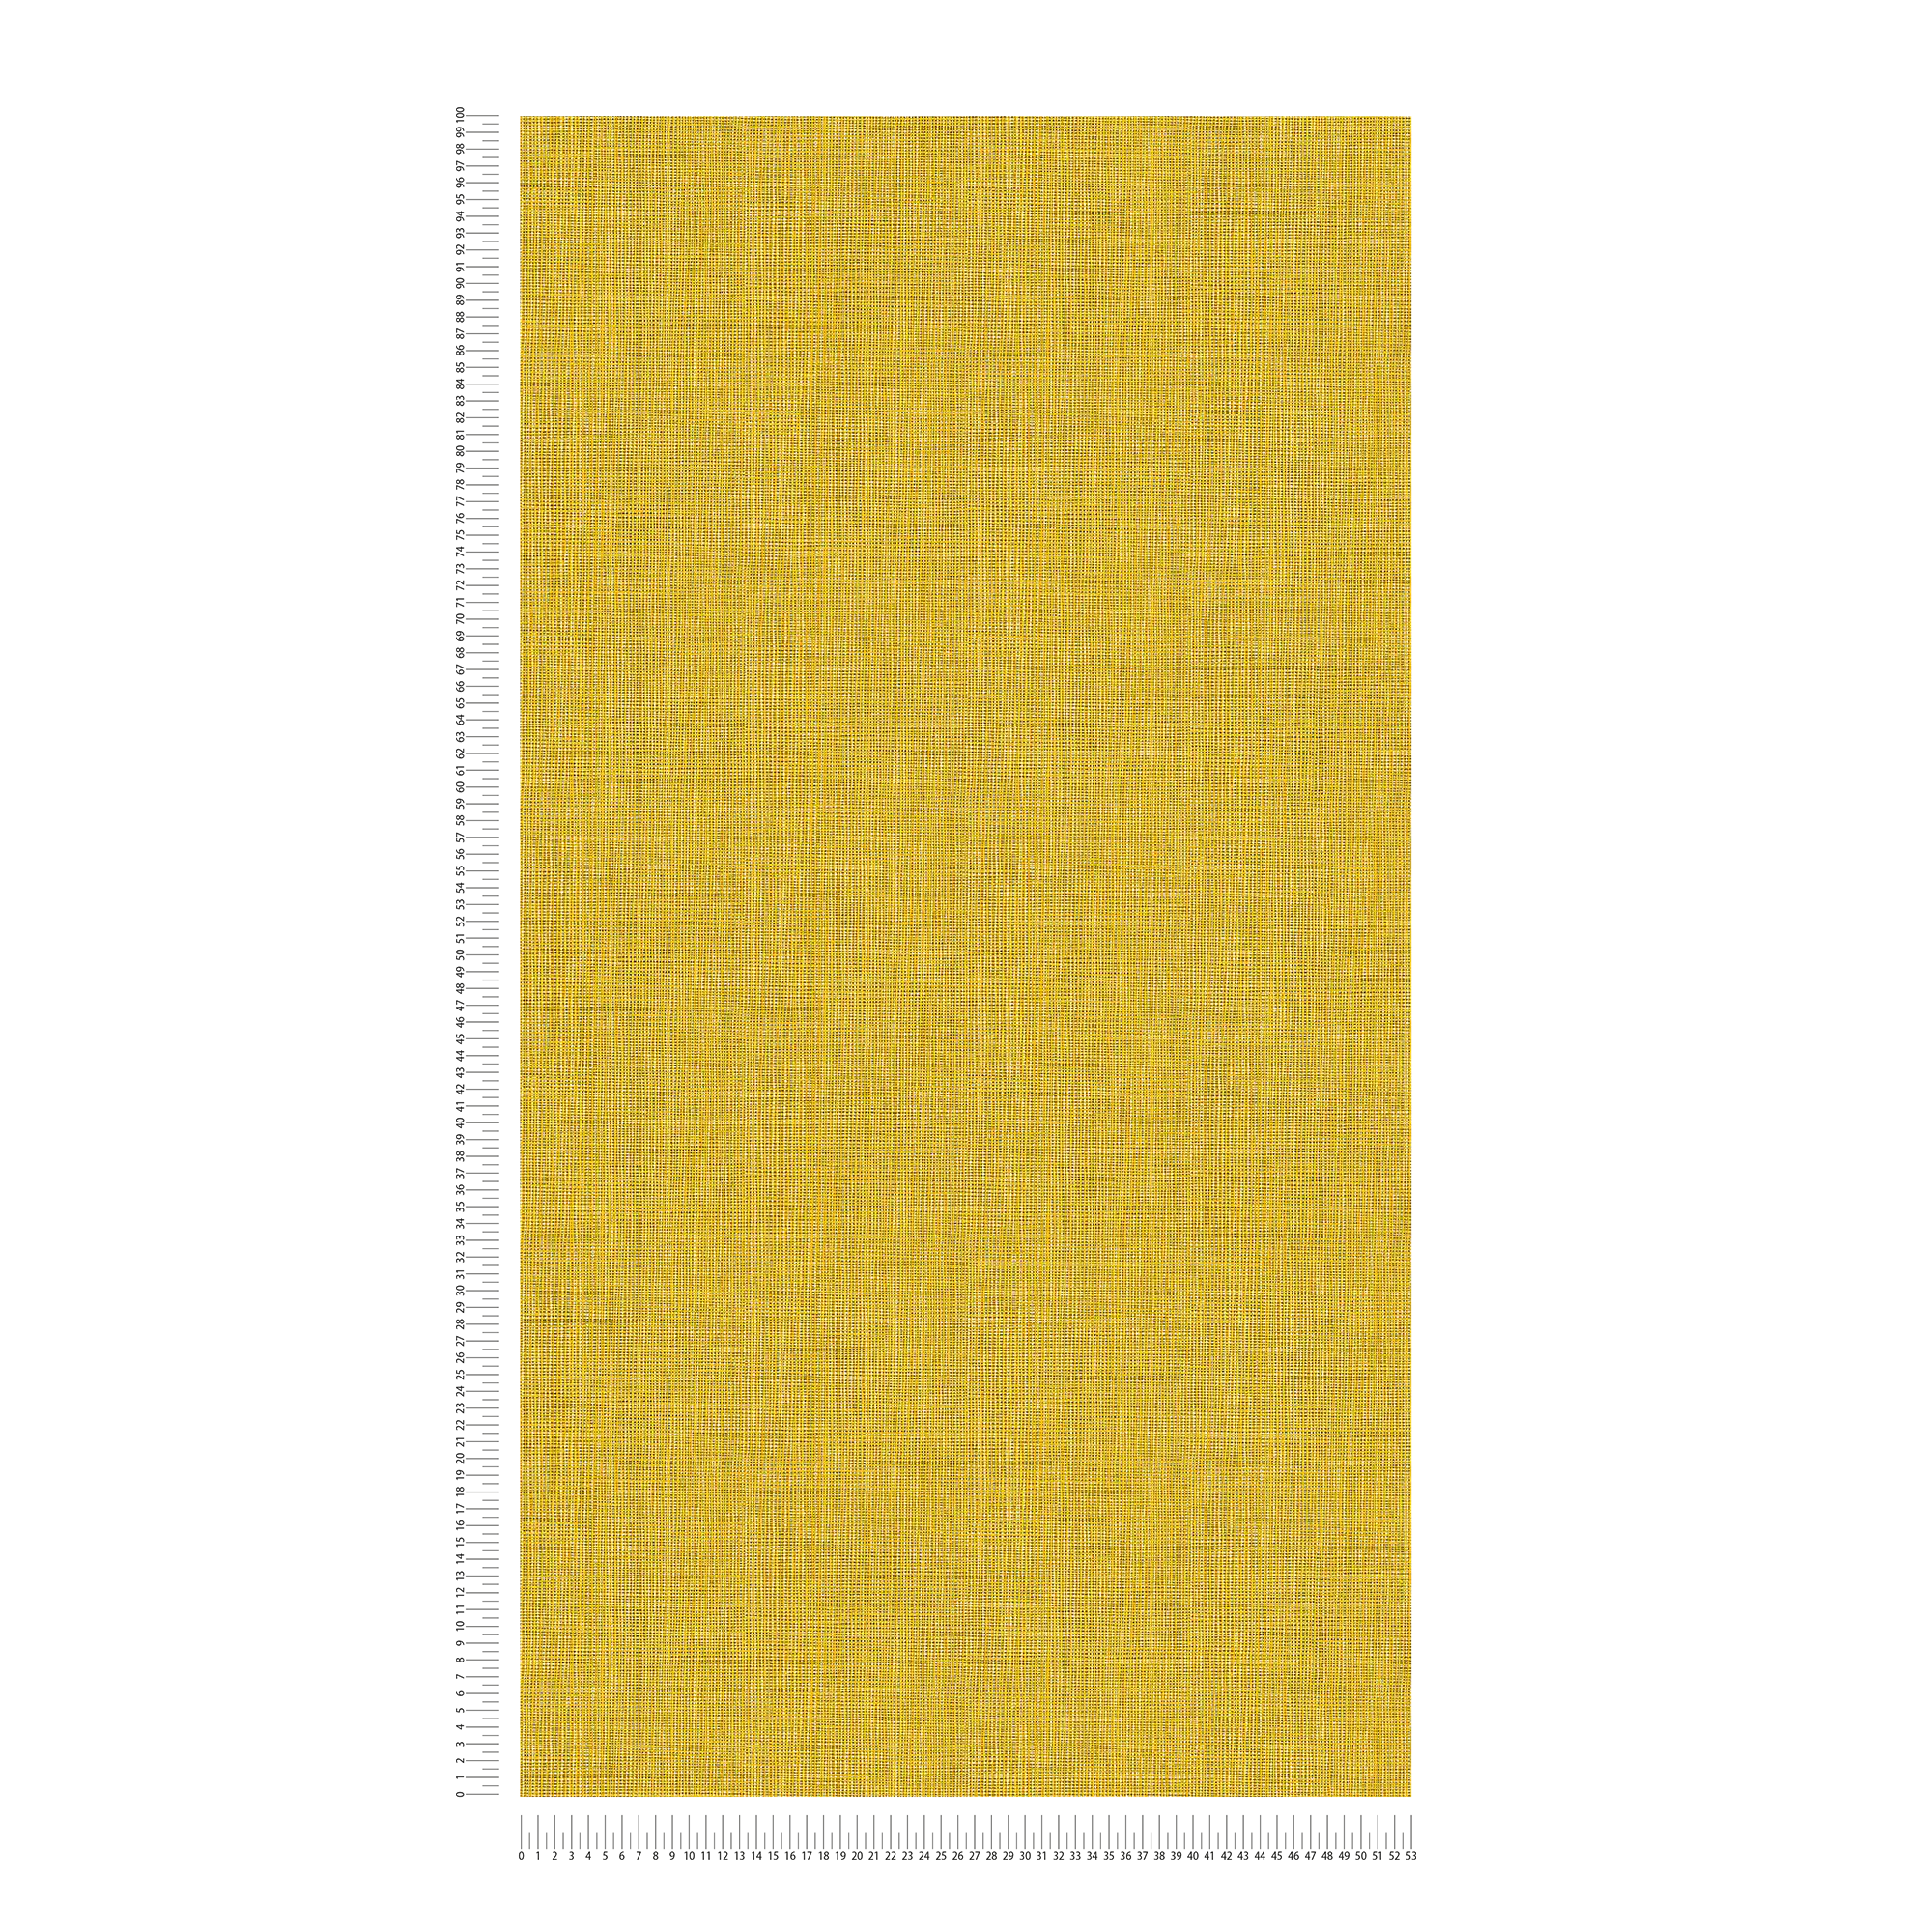             Carta da parati liscia in tessuto ottico con dettagli in argento e grigio - giallo, grigio, argento
        